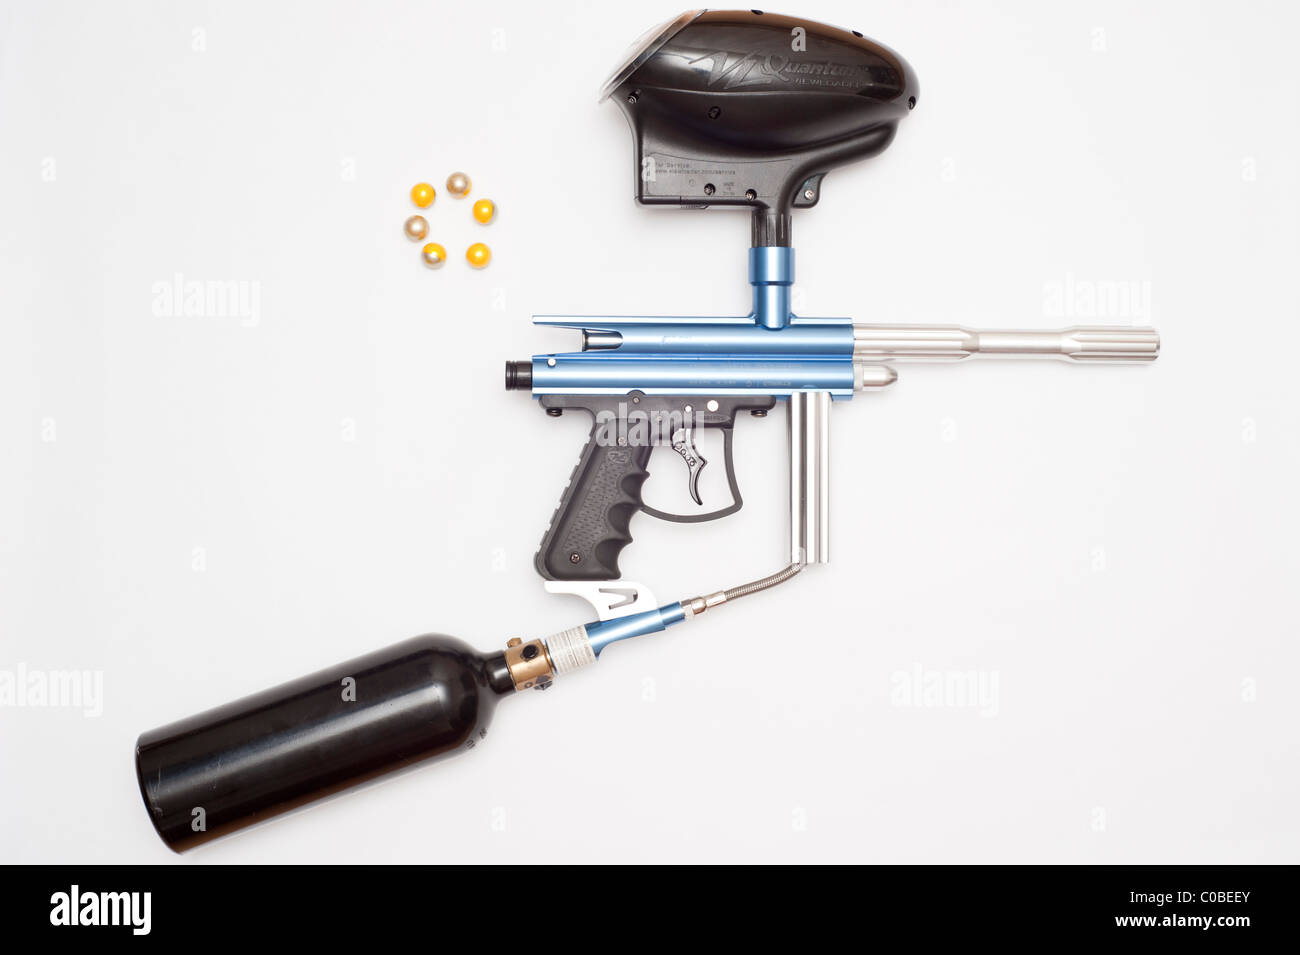 Ein Paintball-Gewehr mit Gas-Kanister und Paintballs Munition auf weißem Hintergrund Stockfoto